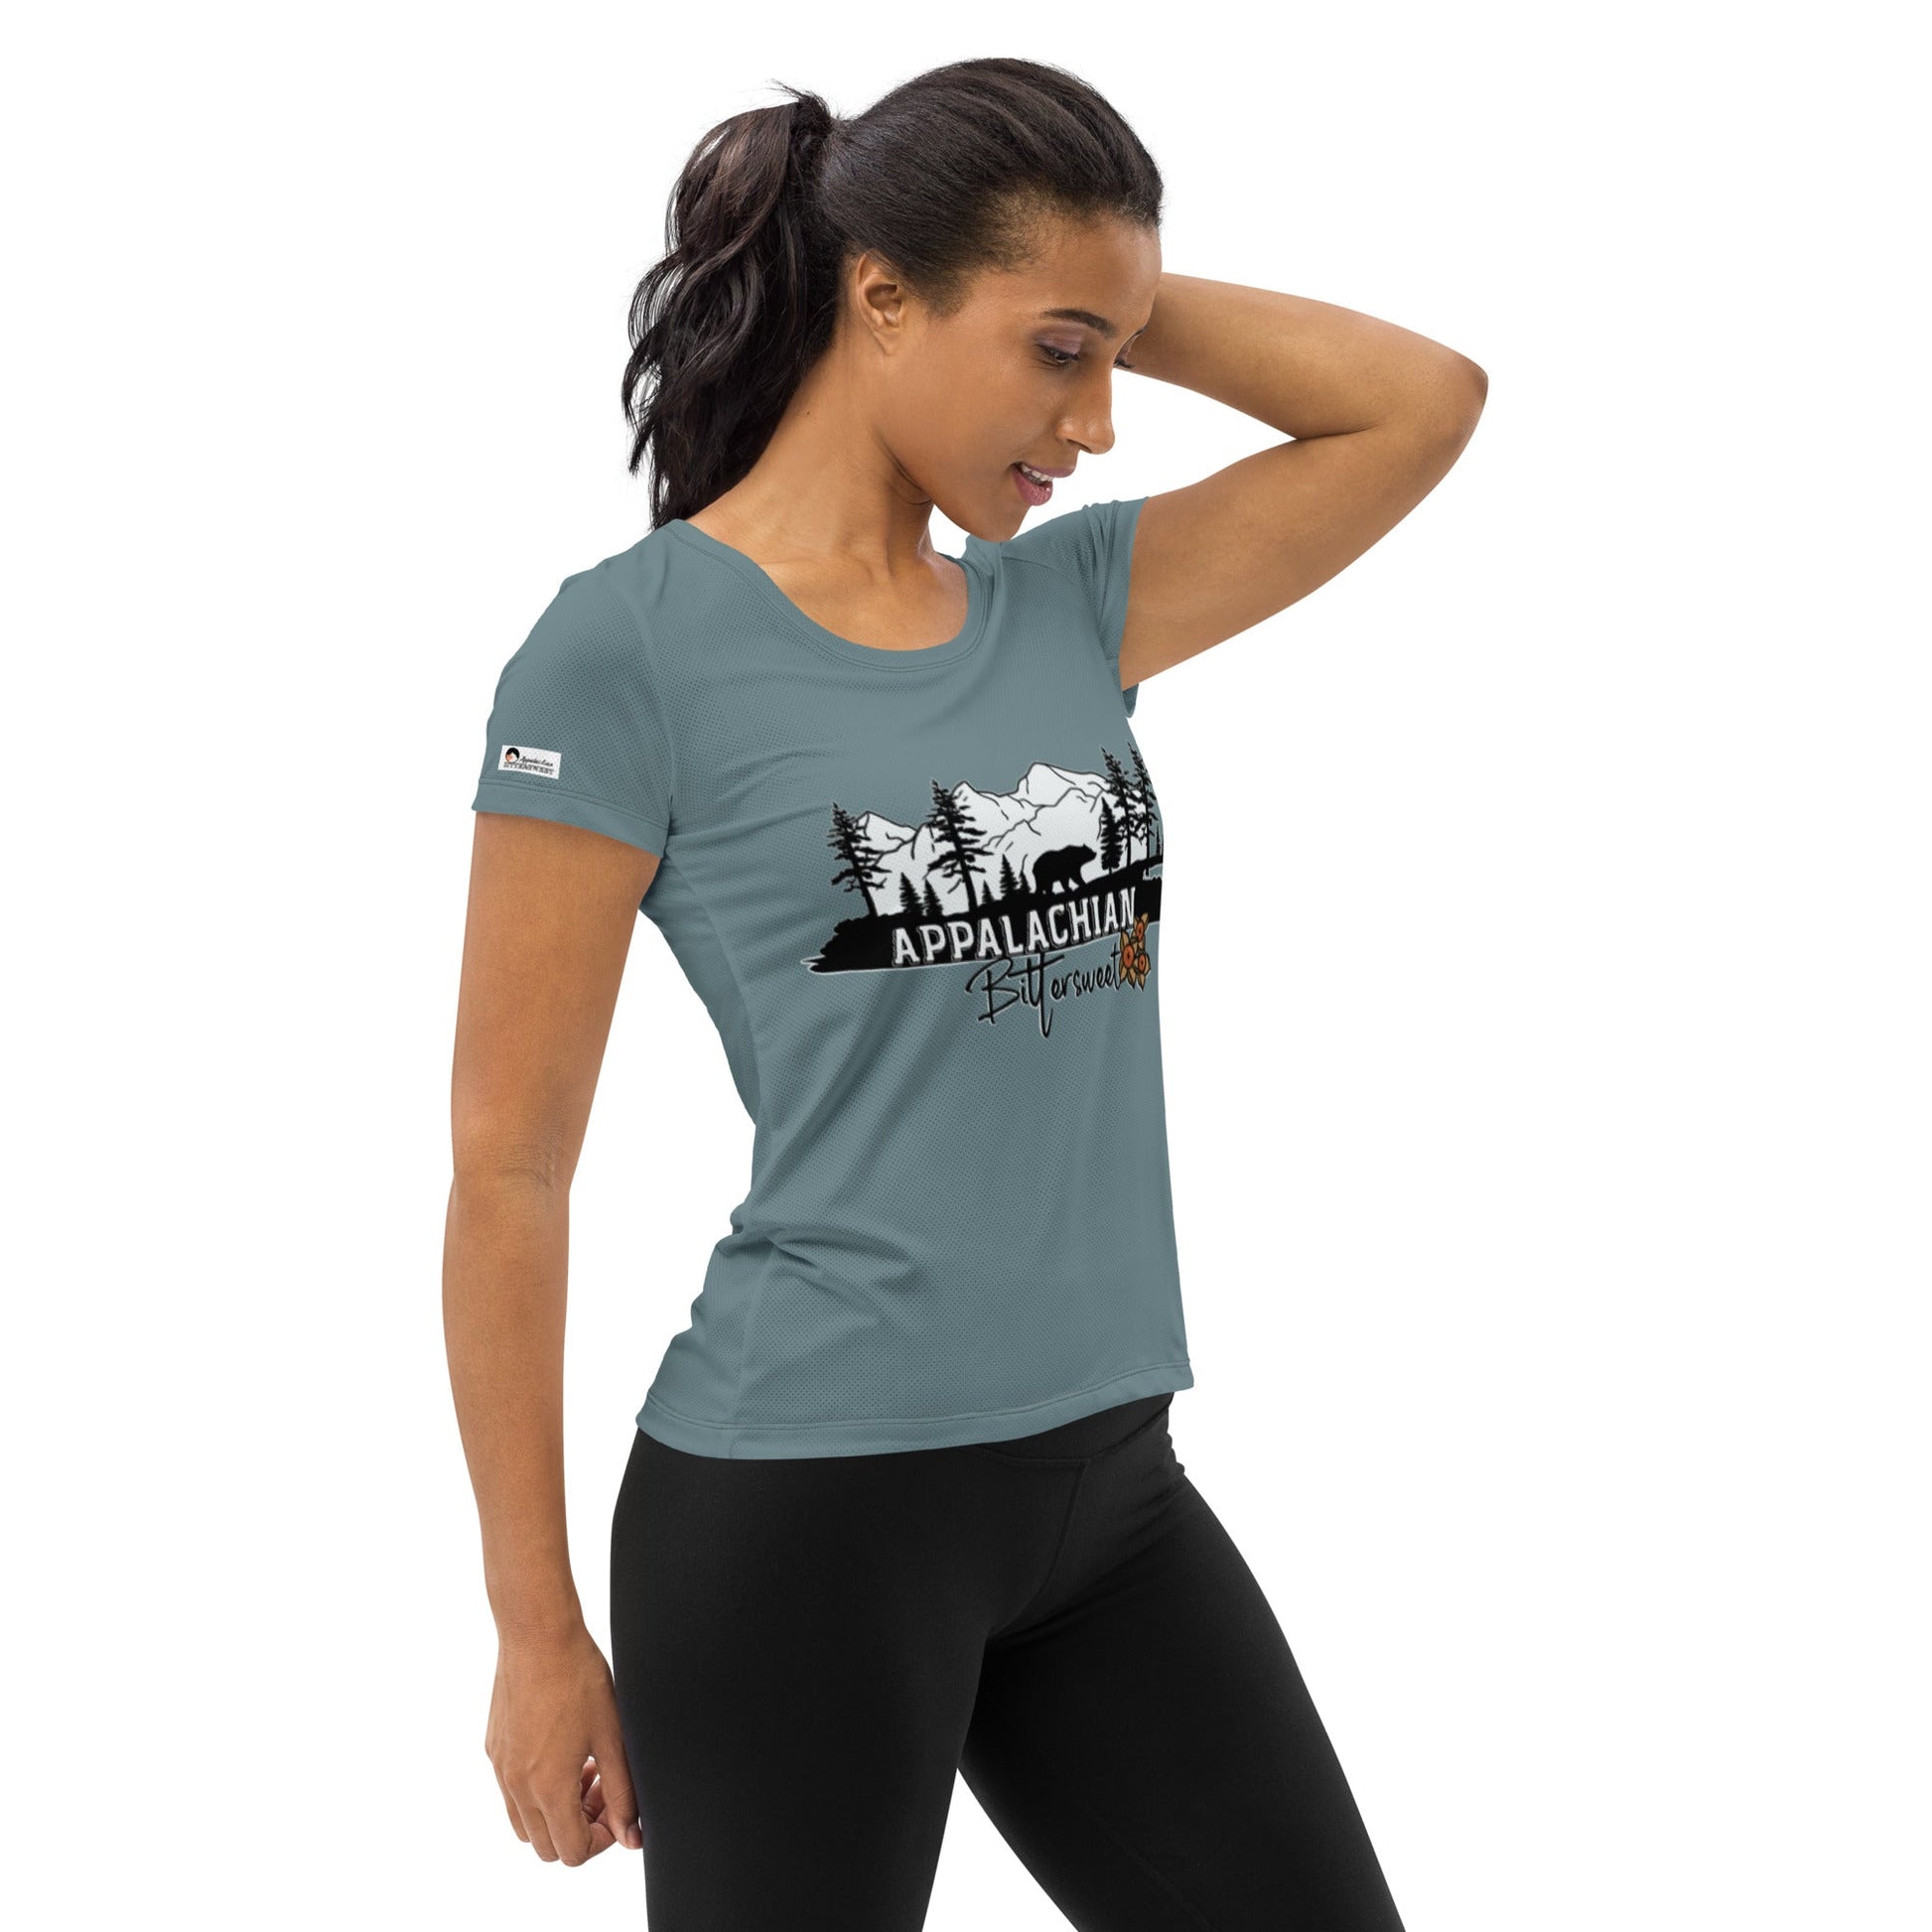 App Bittersweet Slim Fit Athletic Ultra-Light T-shirt - Appalachian Bittersweet -